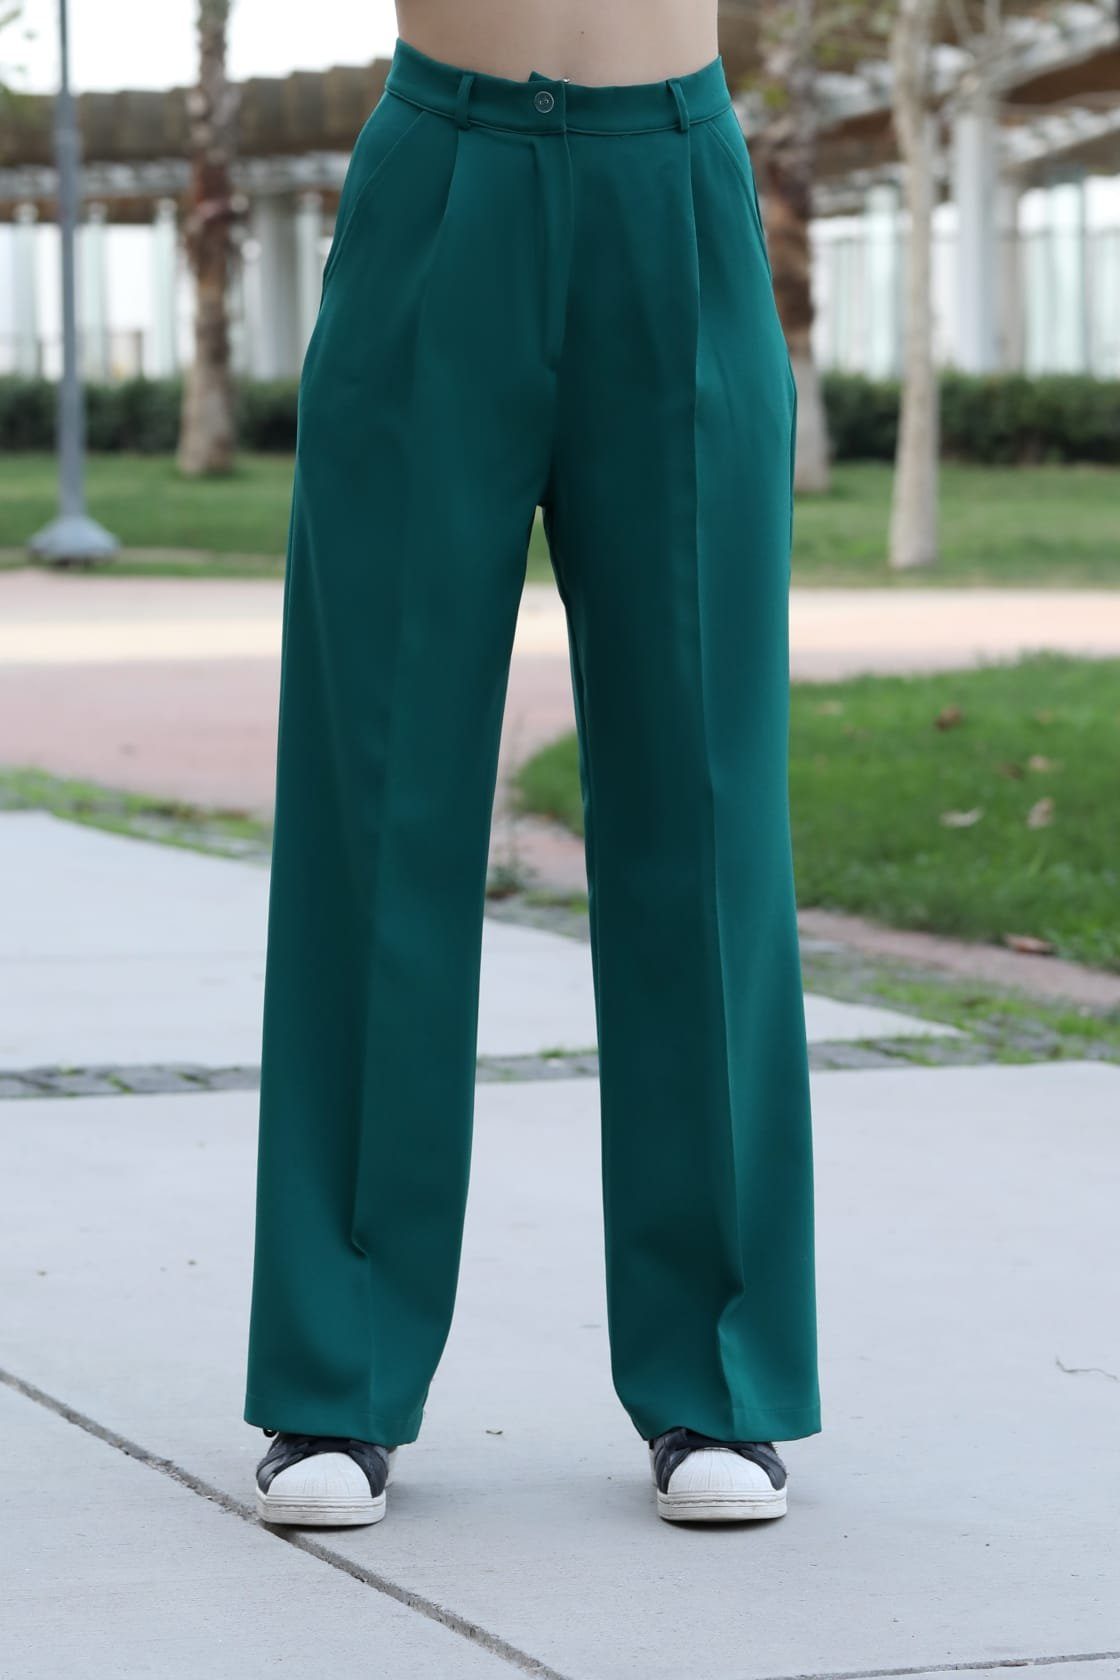 [Das Günstigste aller Zeiten] Modavitrini Palazzohose Weite Damen Farben Hose Lässig lange Smaragd-Grün elegant Locker Hohe sportlich Taille, 10 Hose